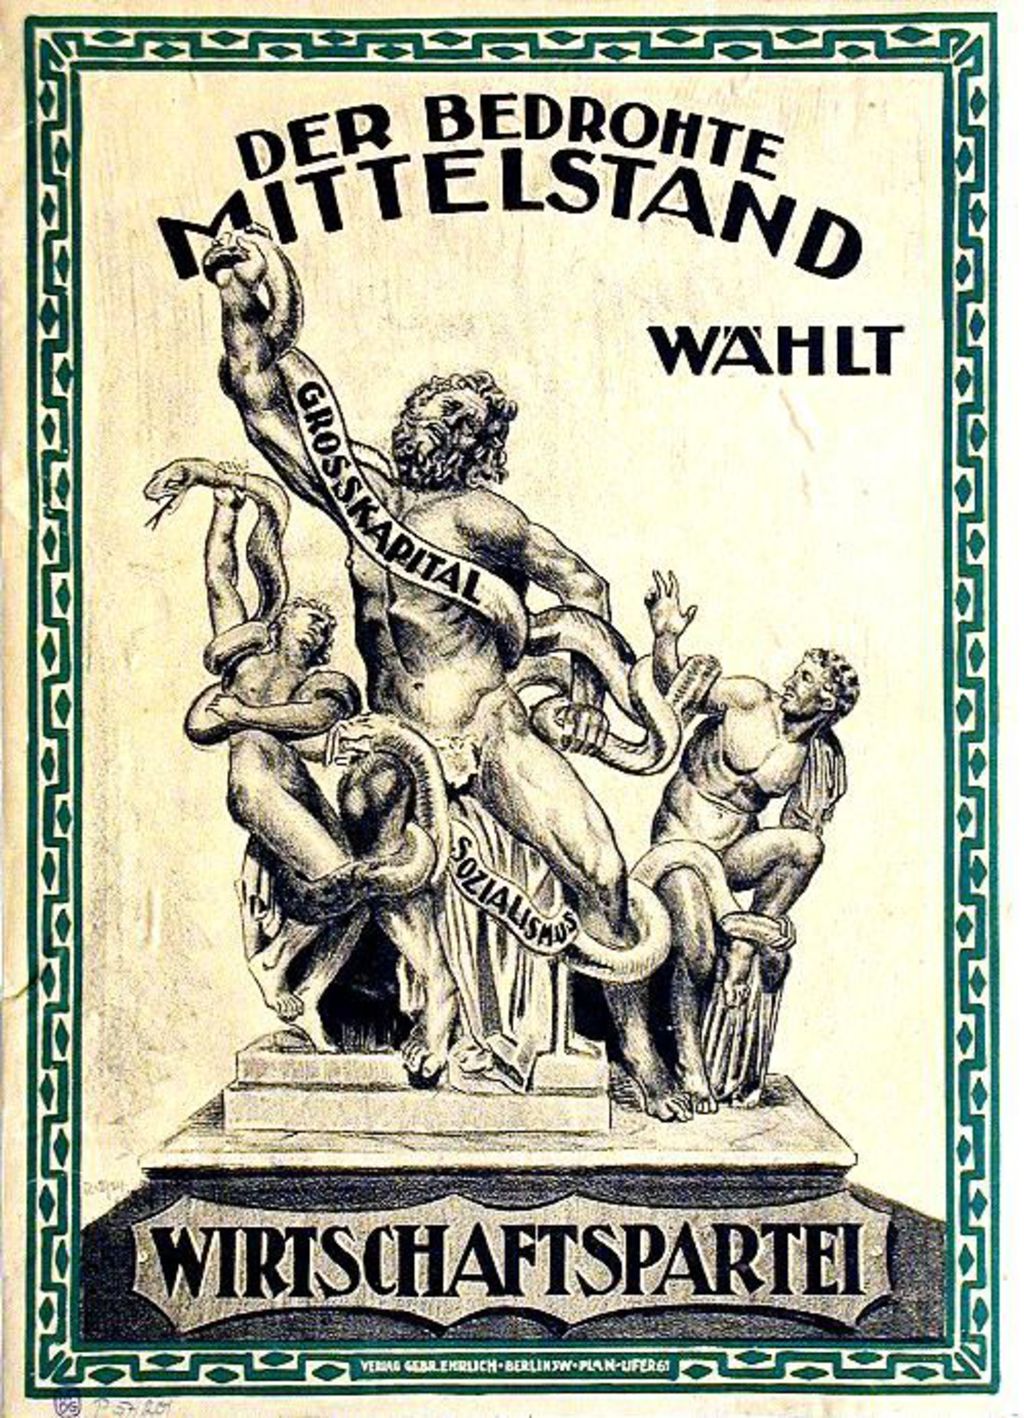 "Der bedrohte Mittelstand wählt Wirtschaftspartei" - Wahlplakat der Wirtschaftspartei zur Reichstagswahl am 7. Dezember 1924